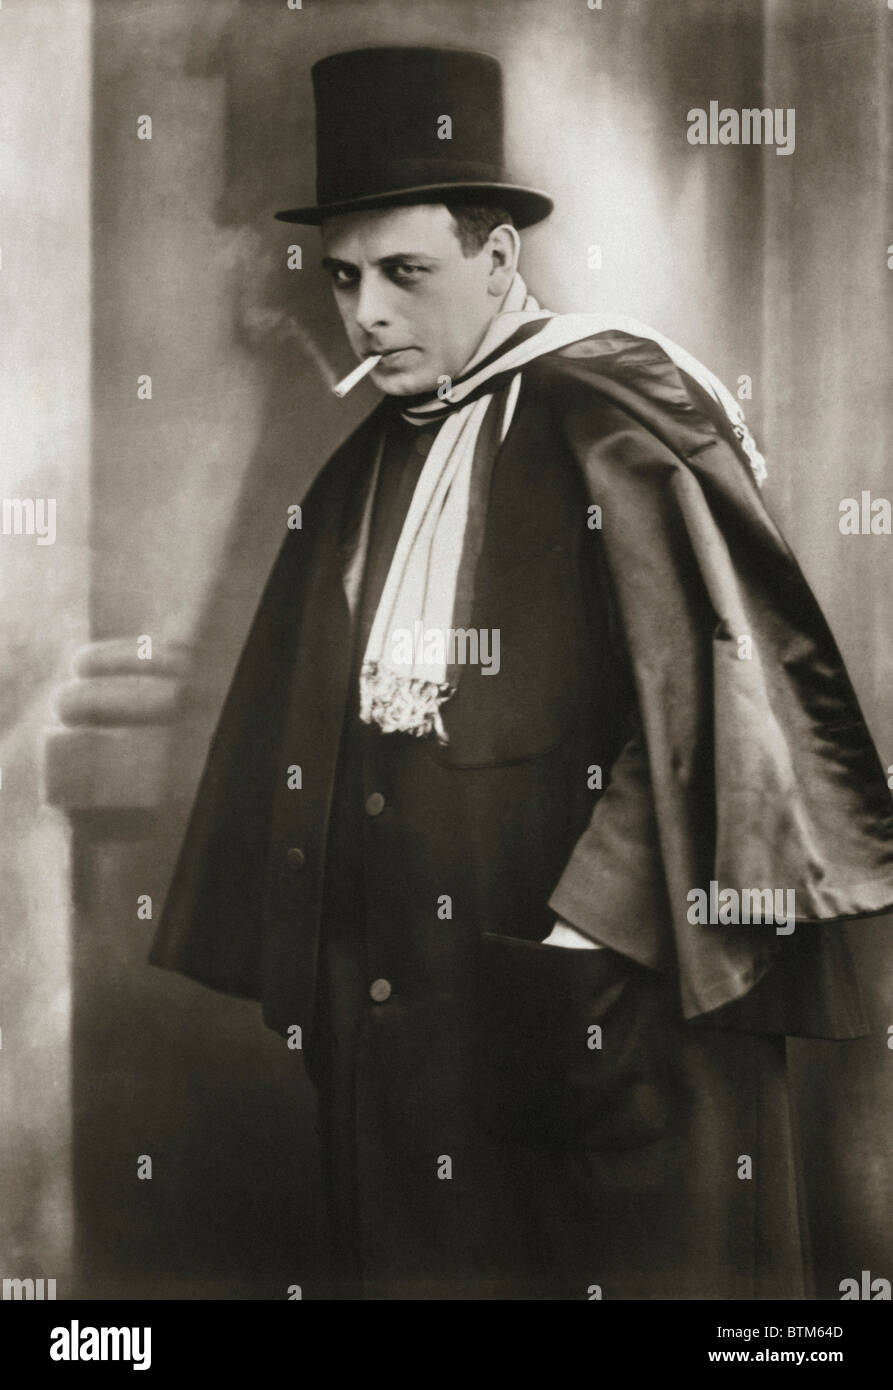 Photo historique (1910) d'un man smoking a cigarette Banque D'Images